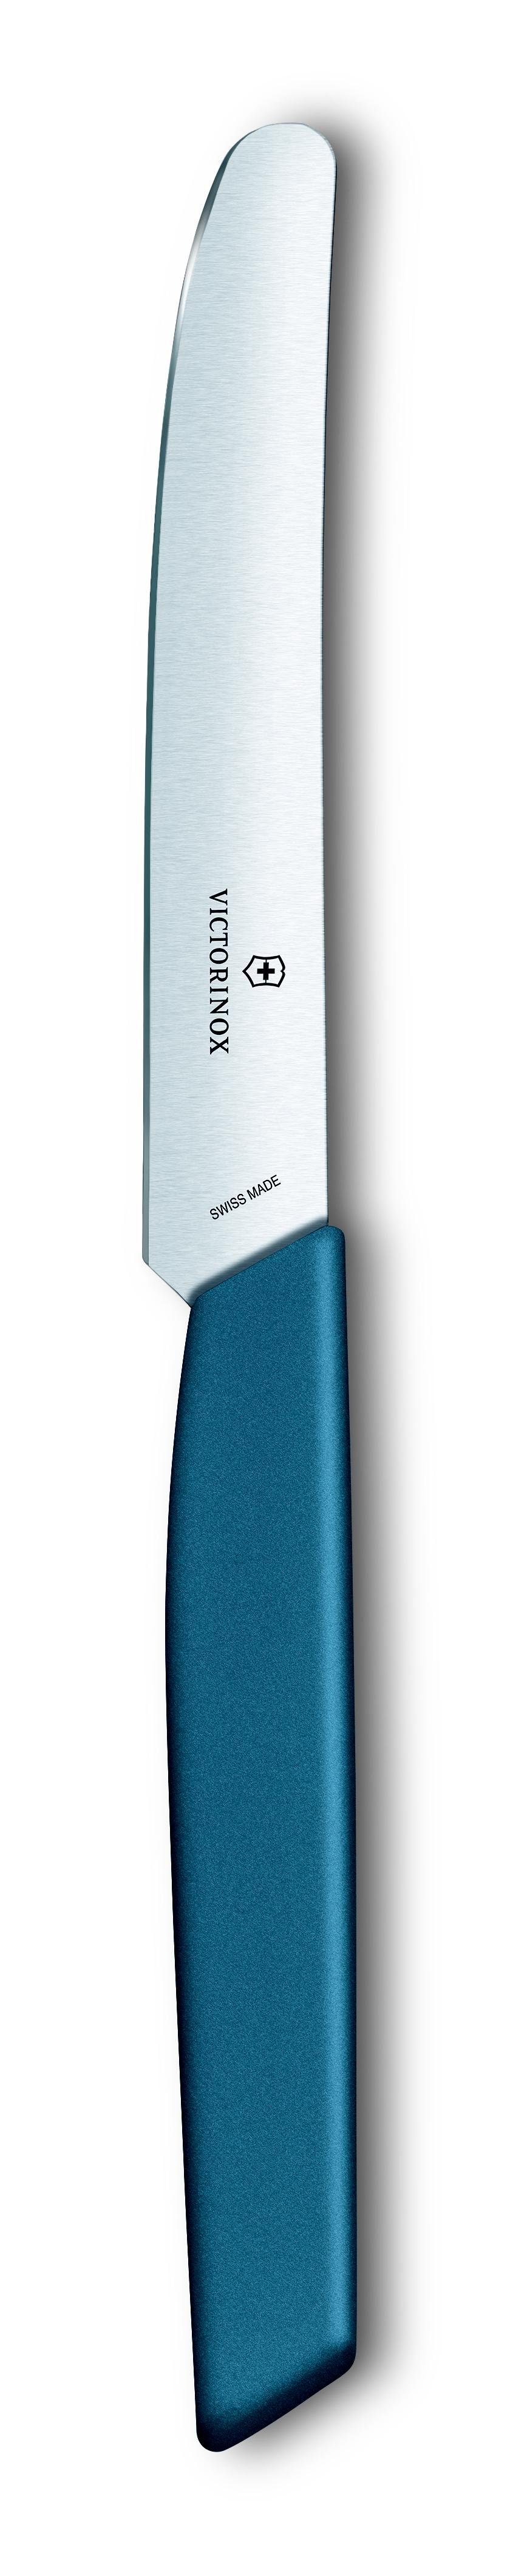 Victorinox Taschenmesser Tafelmesser, gerade, 11 cm, kornblumenblau